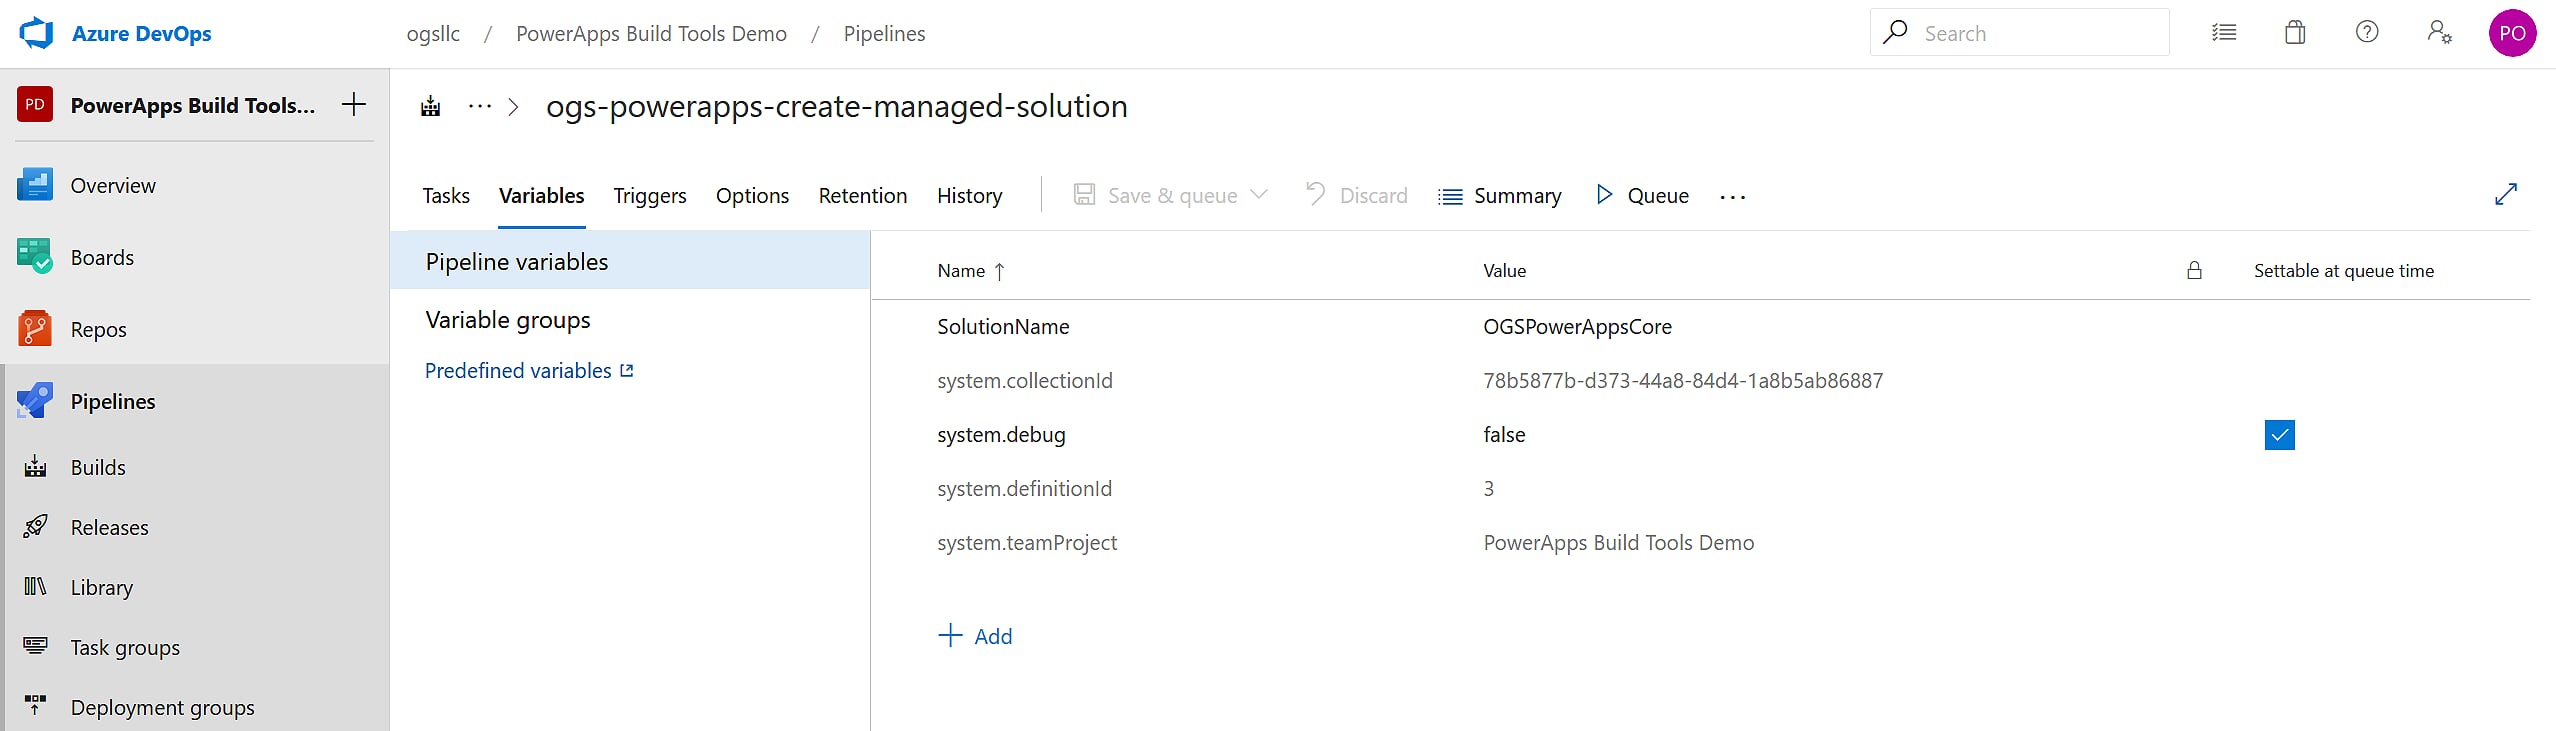 DevOps Create Managed Solution Image 7